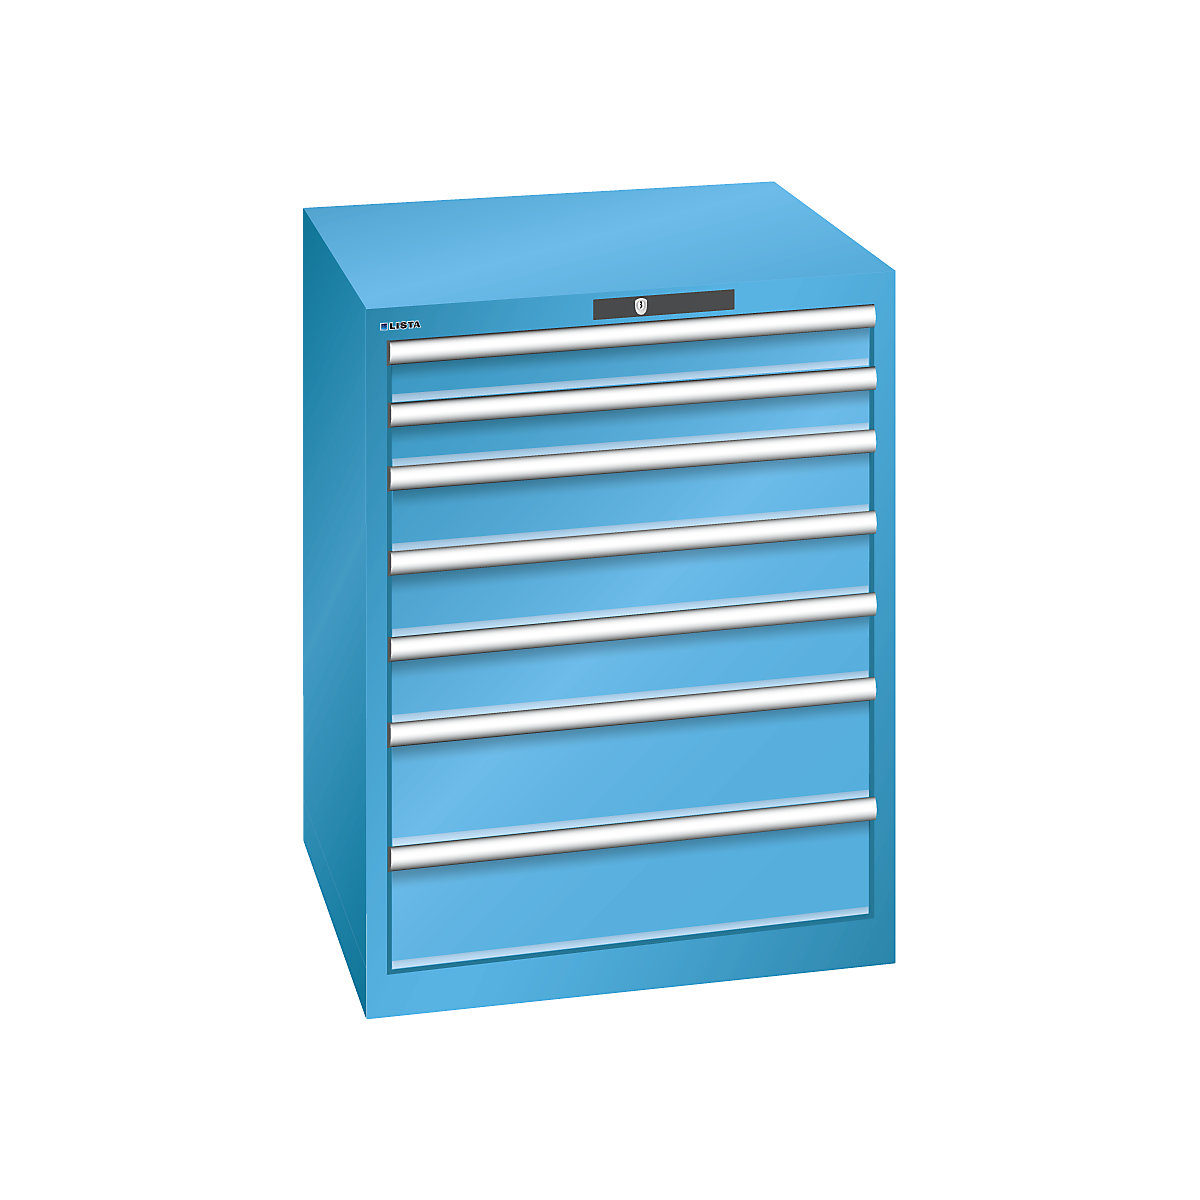 Drawer cupboard, 7 drawers – LISTA, WxDxH 717 x 725 x 850 mm, max. load 75 kg, light blue-8